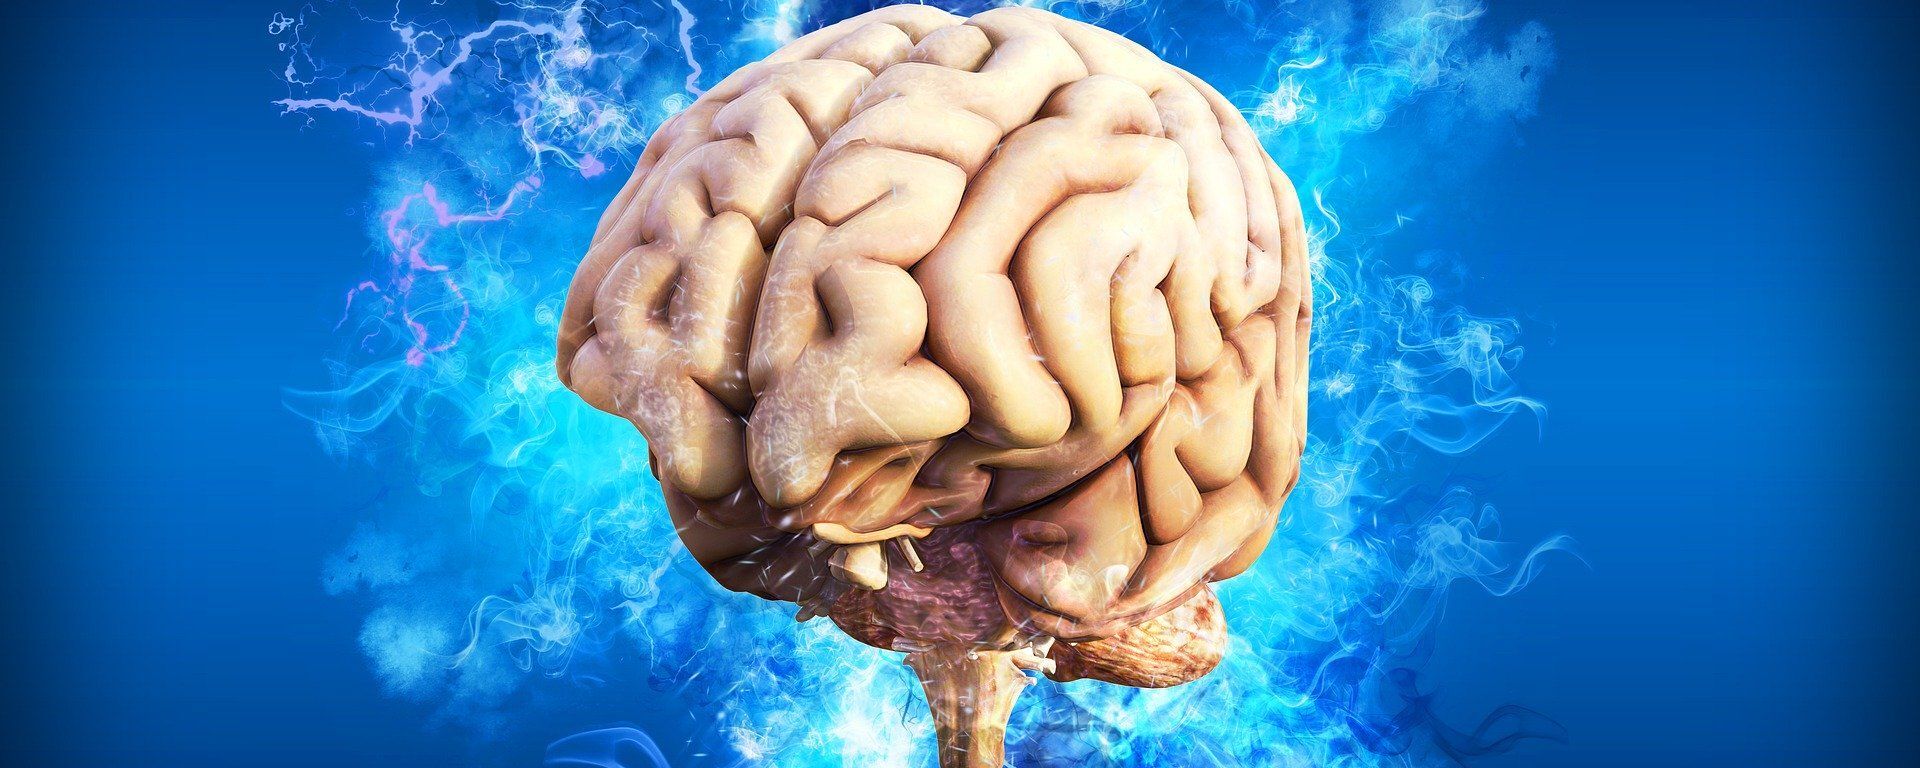 El cerebro humano, referencial - Sputnik Mundo, 1920, 29.05.2020